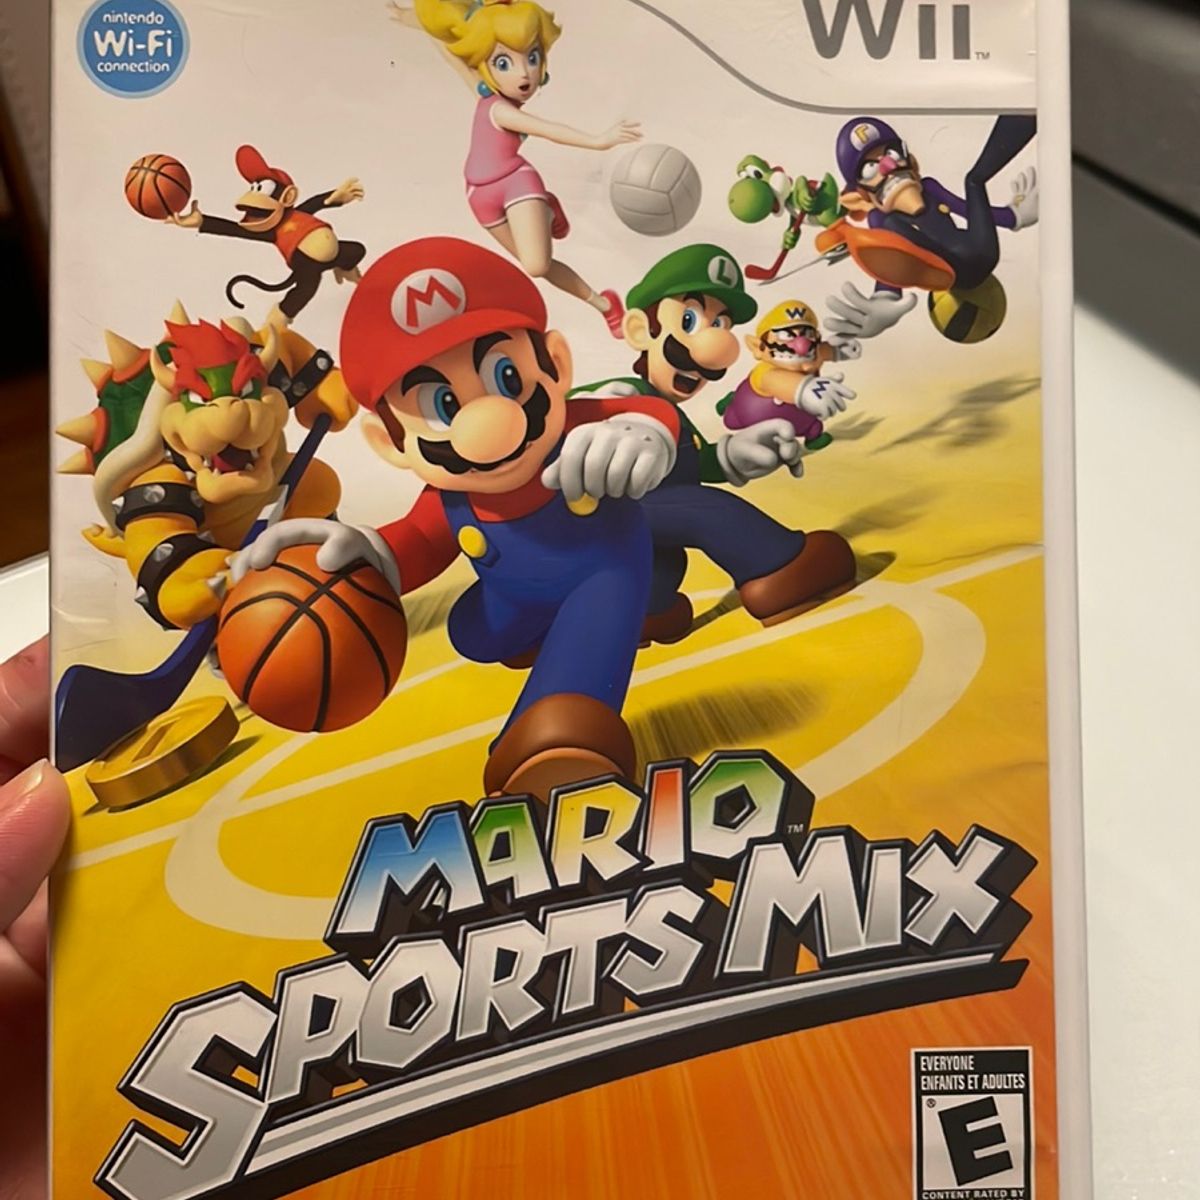 Mario Sports Mix - Nintendo Wii - USADO - Nintendo - Brinquedos e